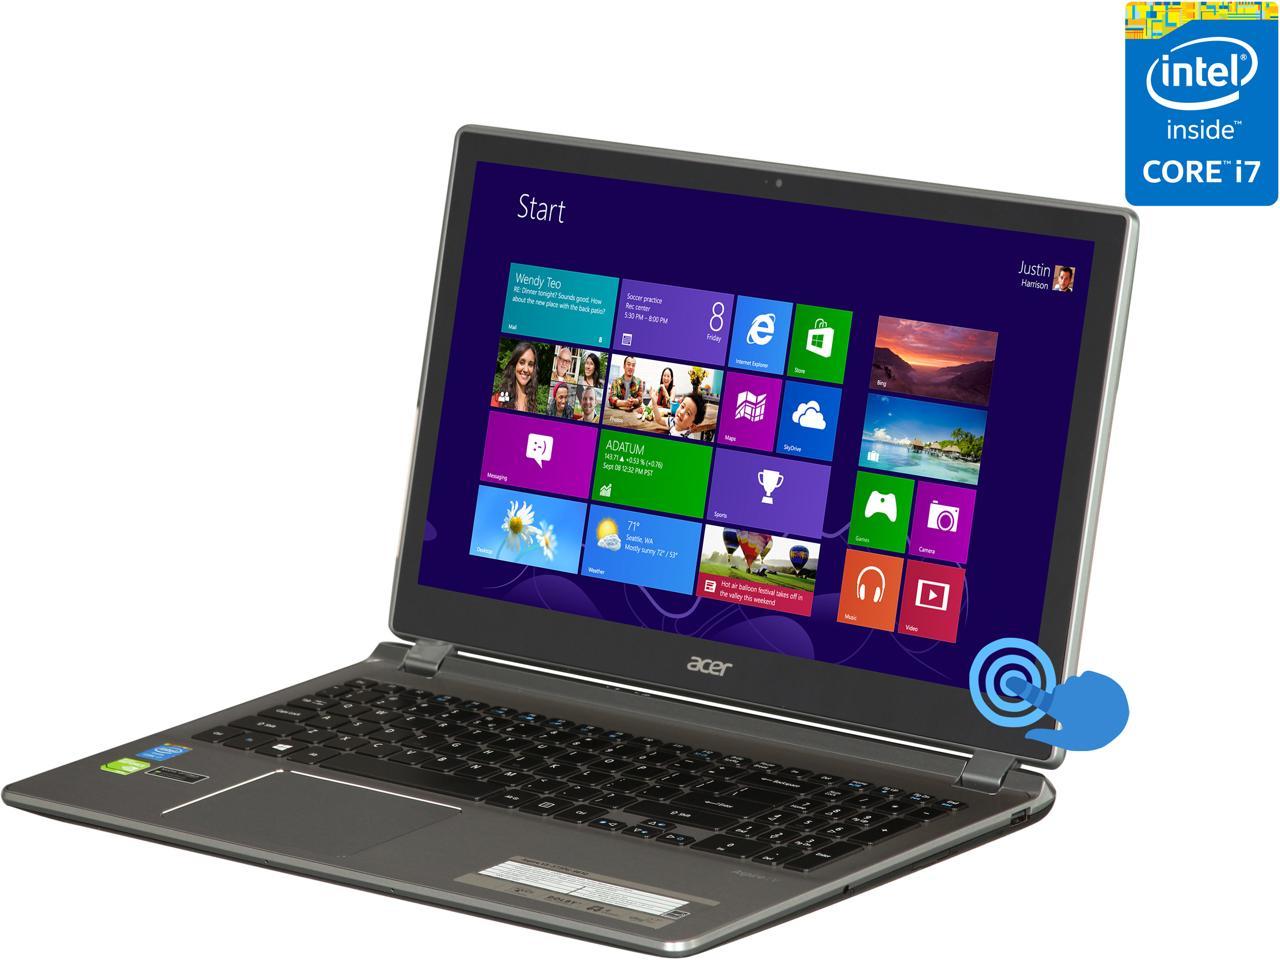 Acer V5 573pg 9610 Gaming Laptop Intel Core I7 4500u 1 8ghz 15 6 Windows 8 Newegg Com